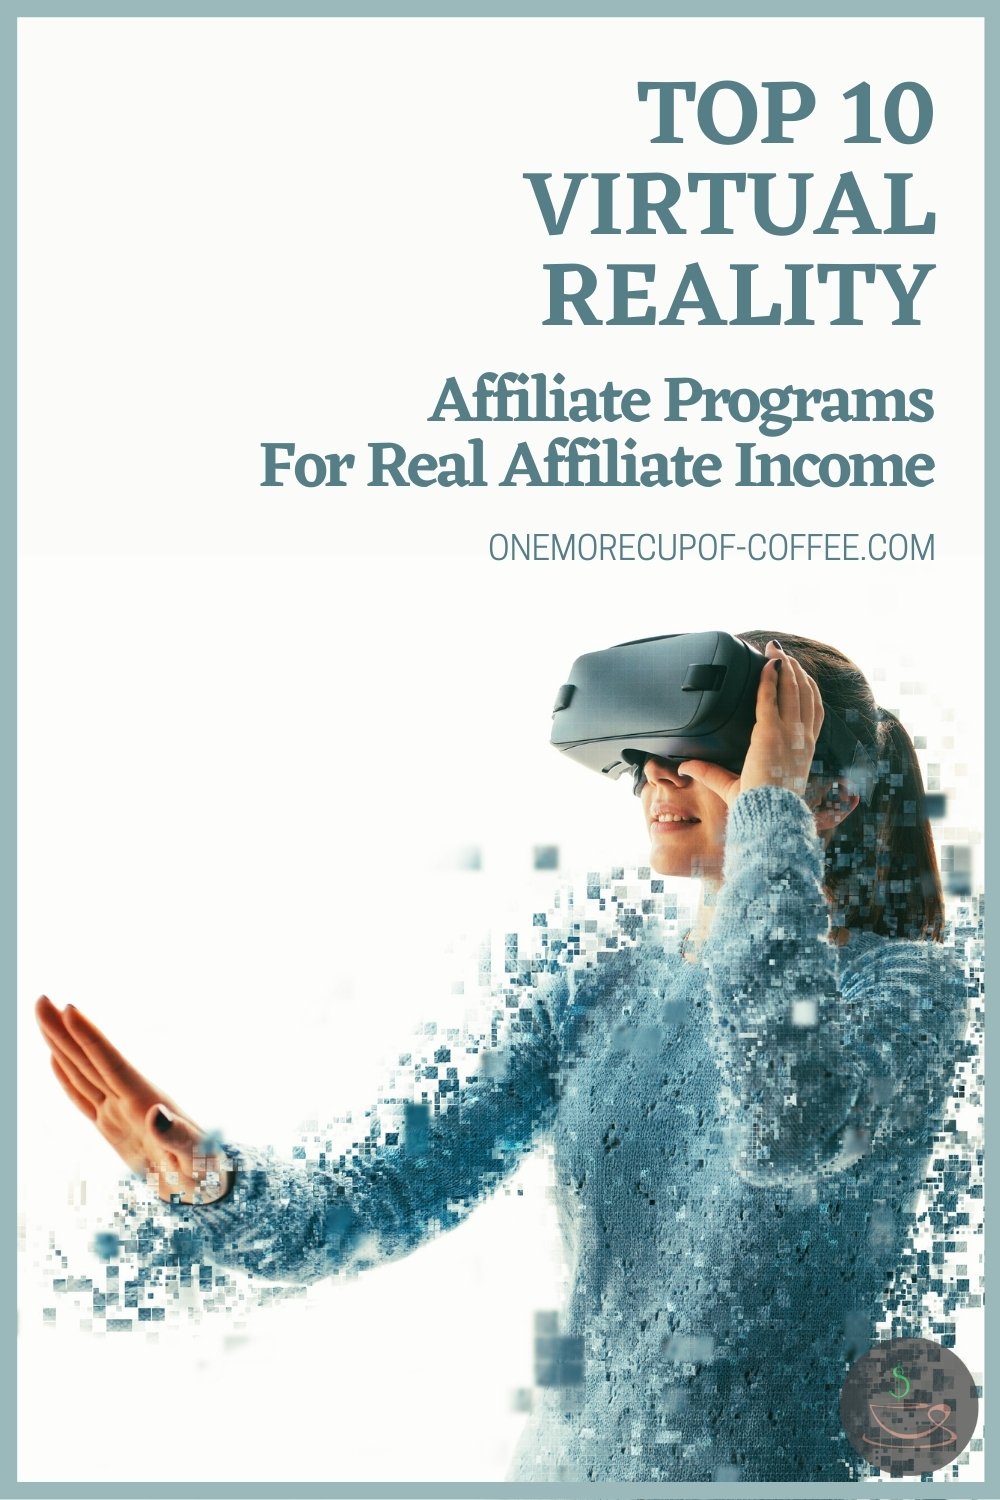 身穿蓝色毛衣、头戴虚拟现实耳机的女子;与文字叠加“十大虚拟现实联盟计划为真正的联盟收入”